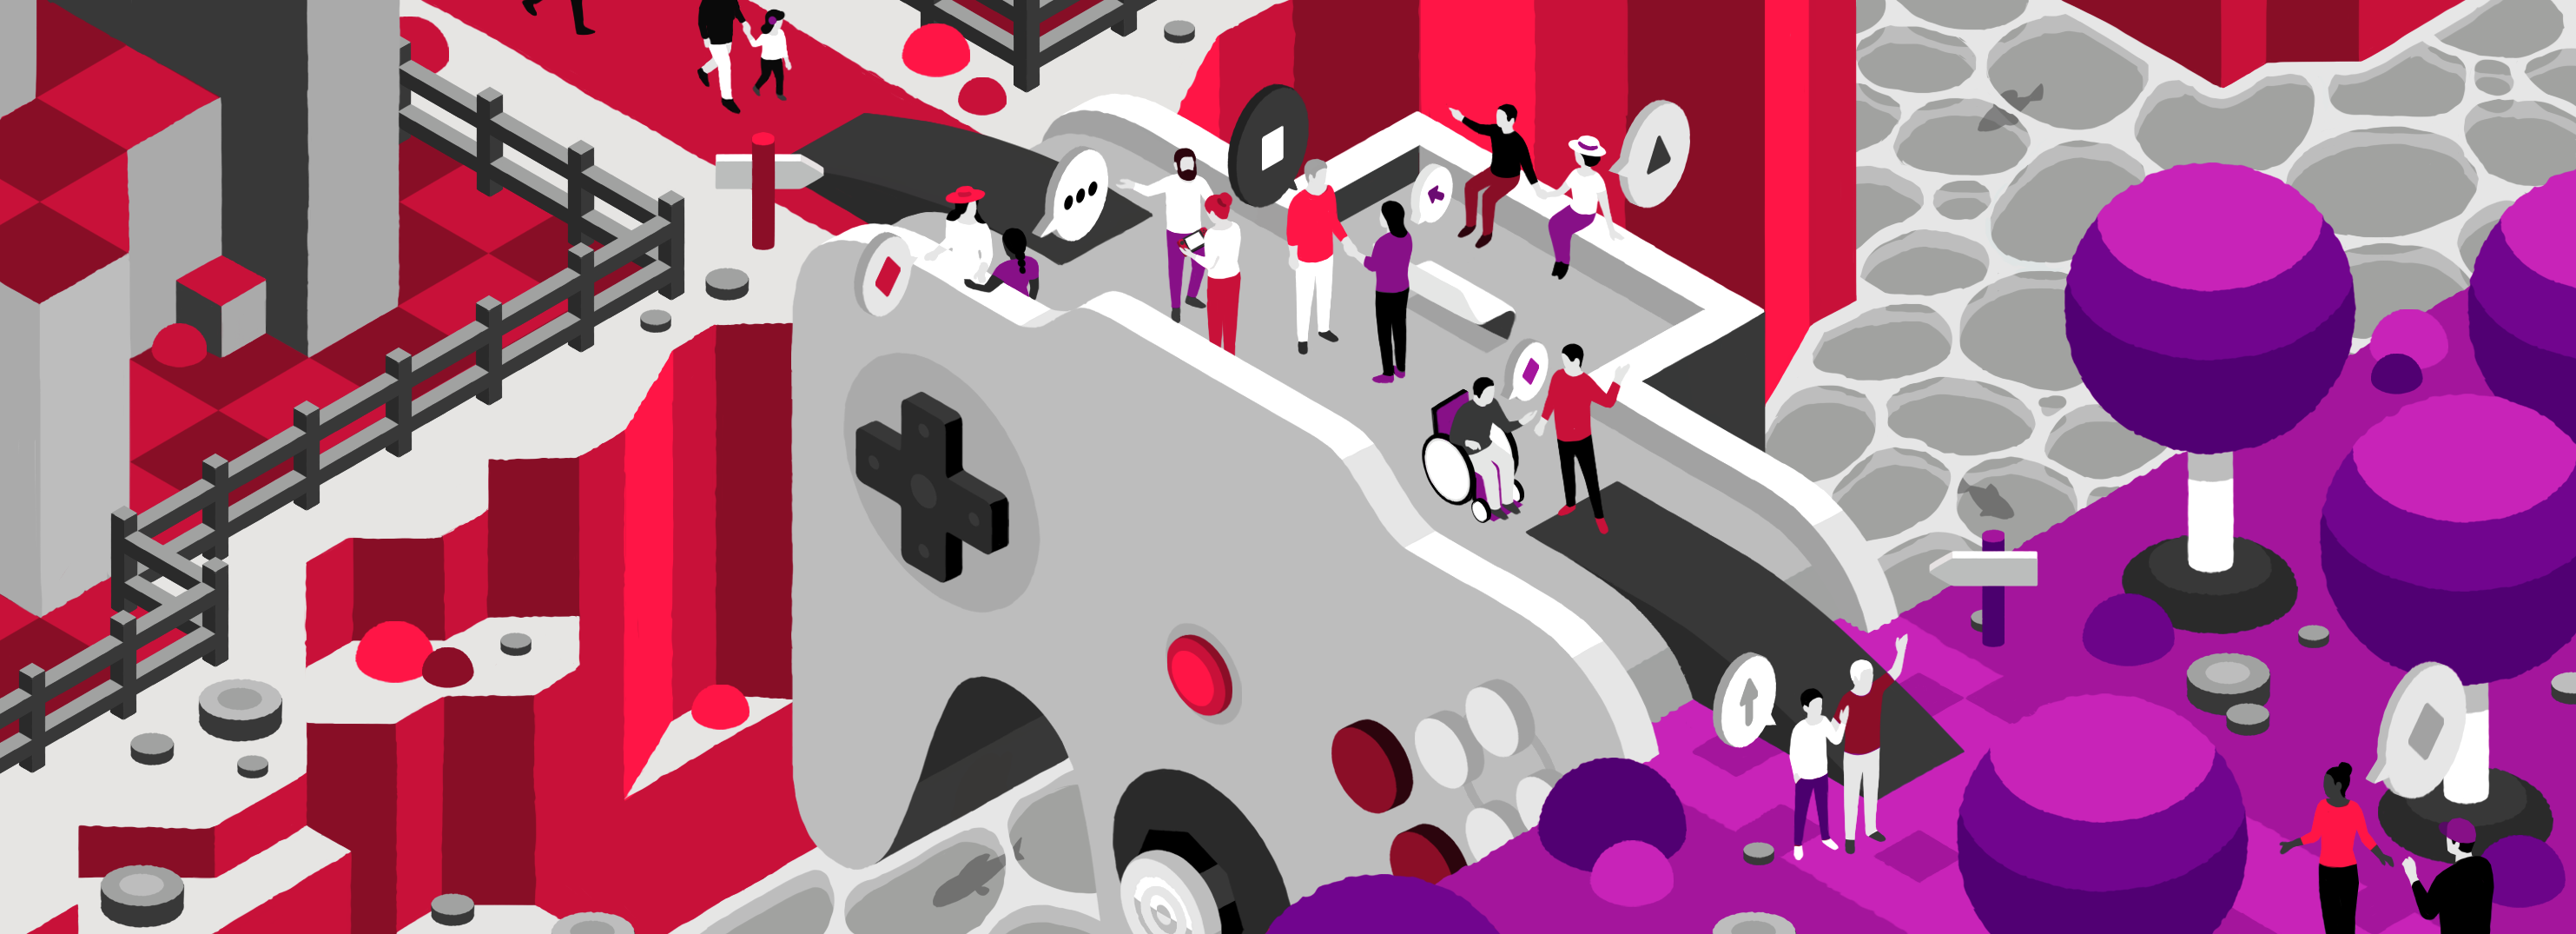 Illustration de la page "Médiation par le jeu". Un pont en forme de manette de jeu relie deux côtés d'une rivière, l'un rouge, l'autre violet. Le pont est peuplé de personnages colorés rouge ou violet. Le pont agit comme un lien, un lieu de rendez-vous entre les deux communautés.